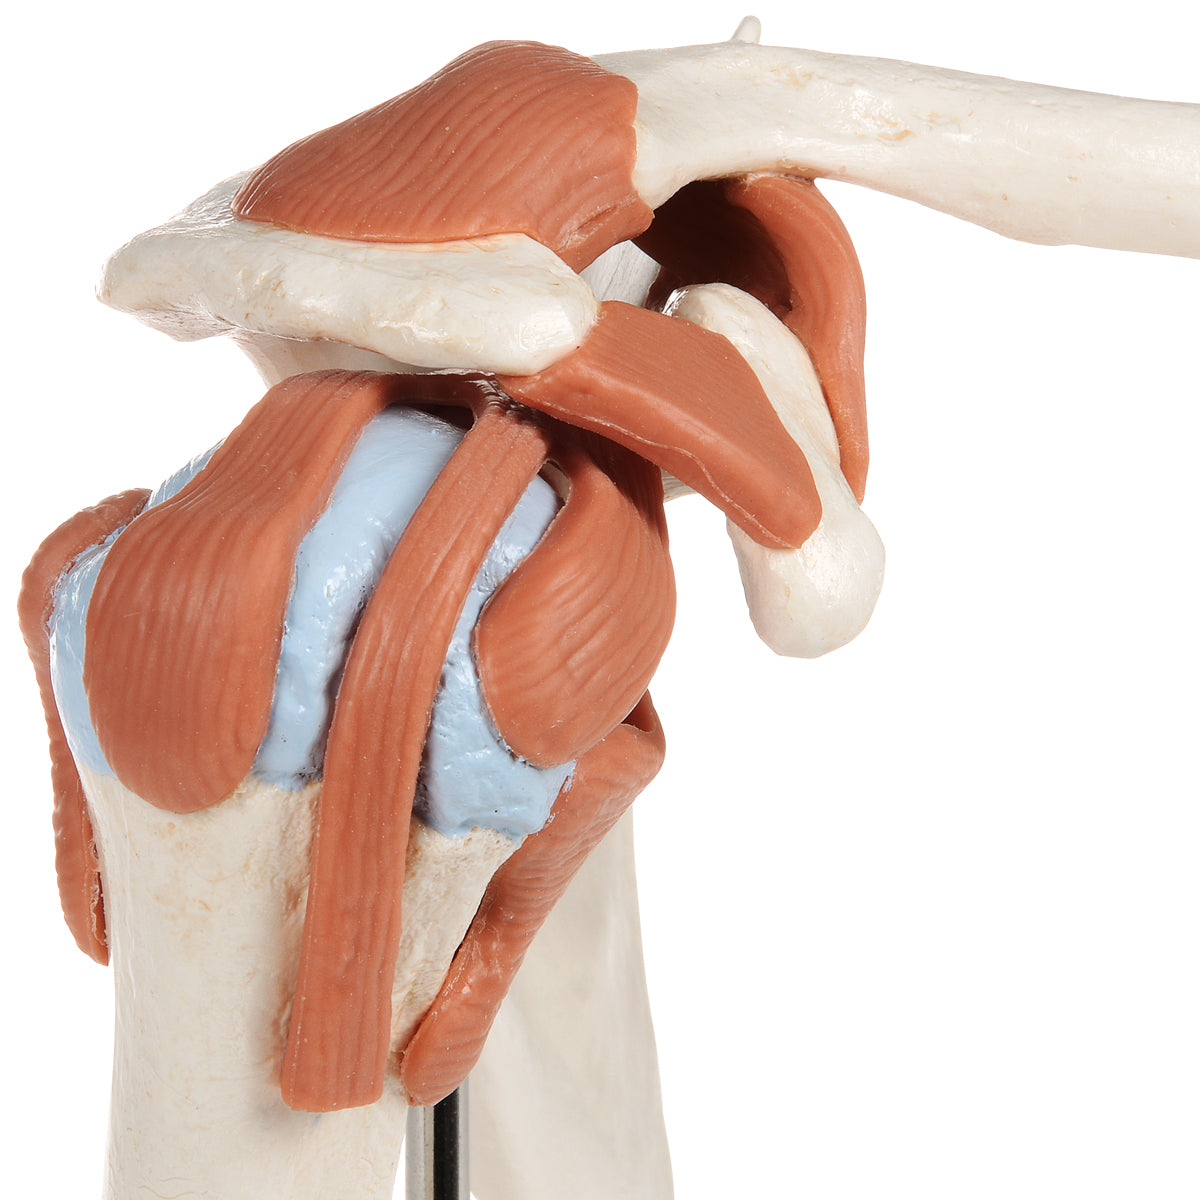 Smidig axelmodell med ligament och färgade ledytor